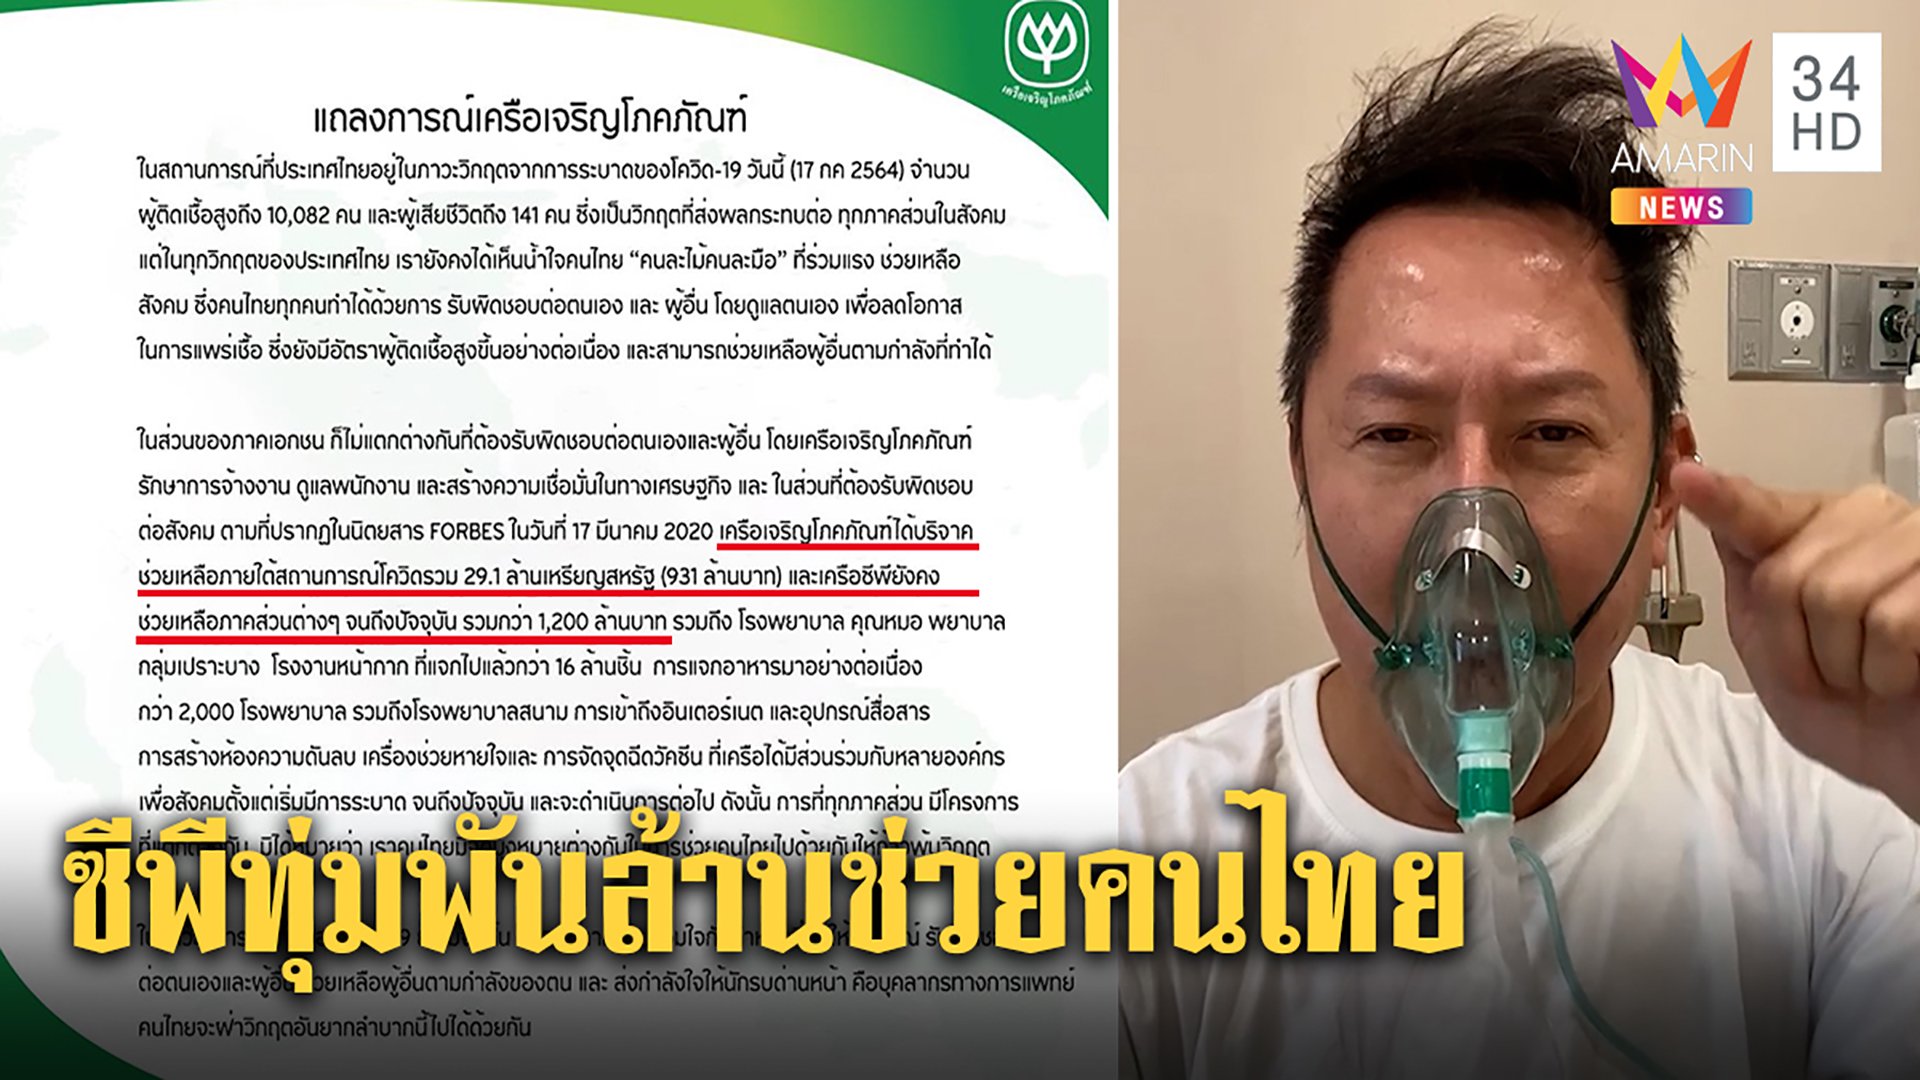 ซีพีทุ่ม 1,200 ล้านช่วยหมอ - รพ. คนไทยฝ่าวิกฤตโควิด "ณวัฒน์" ไม่หยุดขอ 100 ล้านทำกุศล | ทุบโต๊ะข่าว | 17 ก.ค. 64 | AMARIN TVHD34